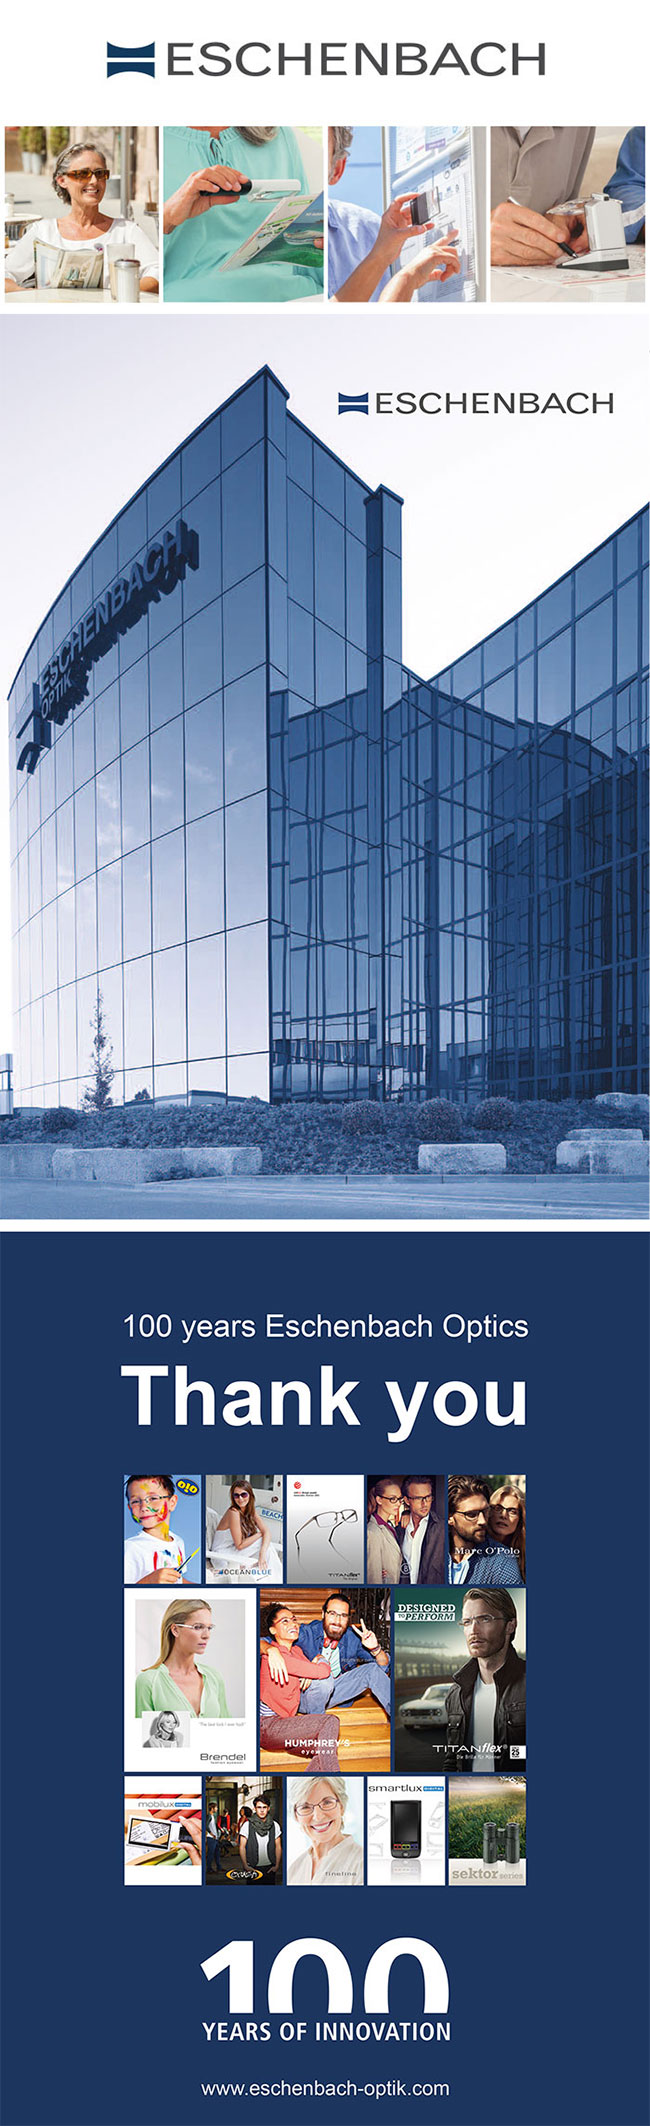 【Eschenbach】4x/16D/35mm 德國製攜帶型非球面放大鏡 171014